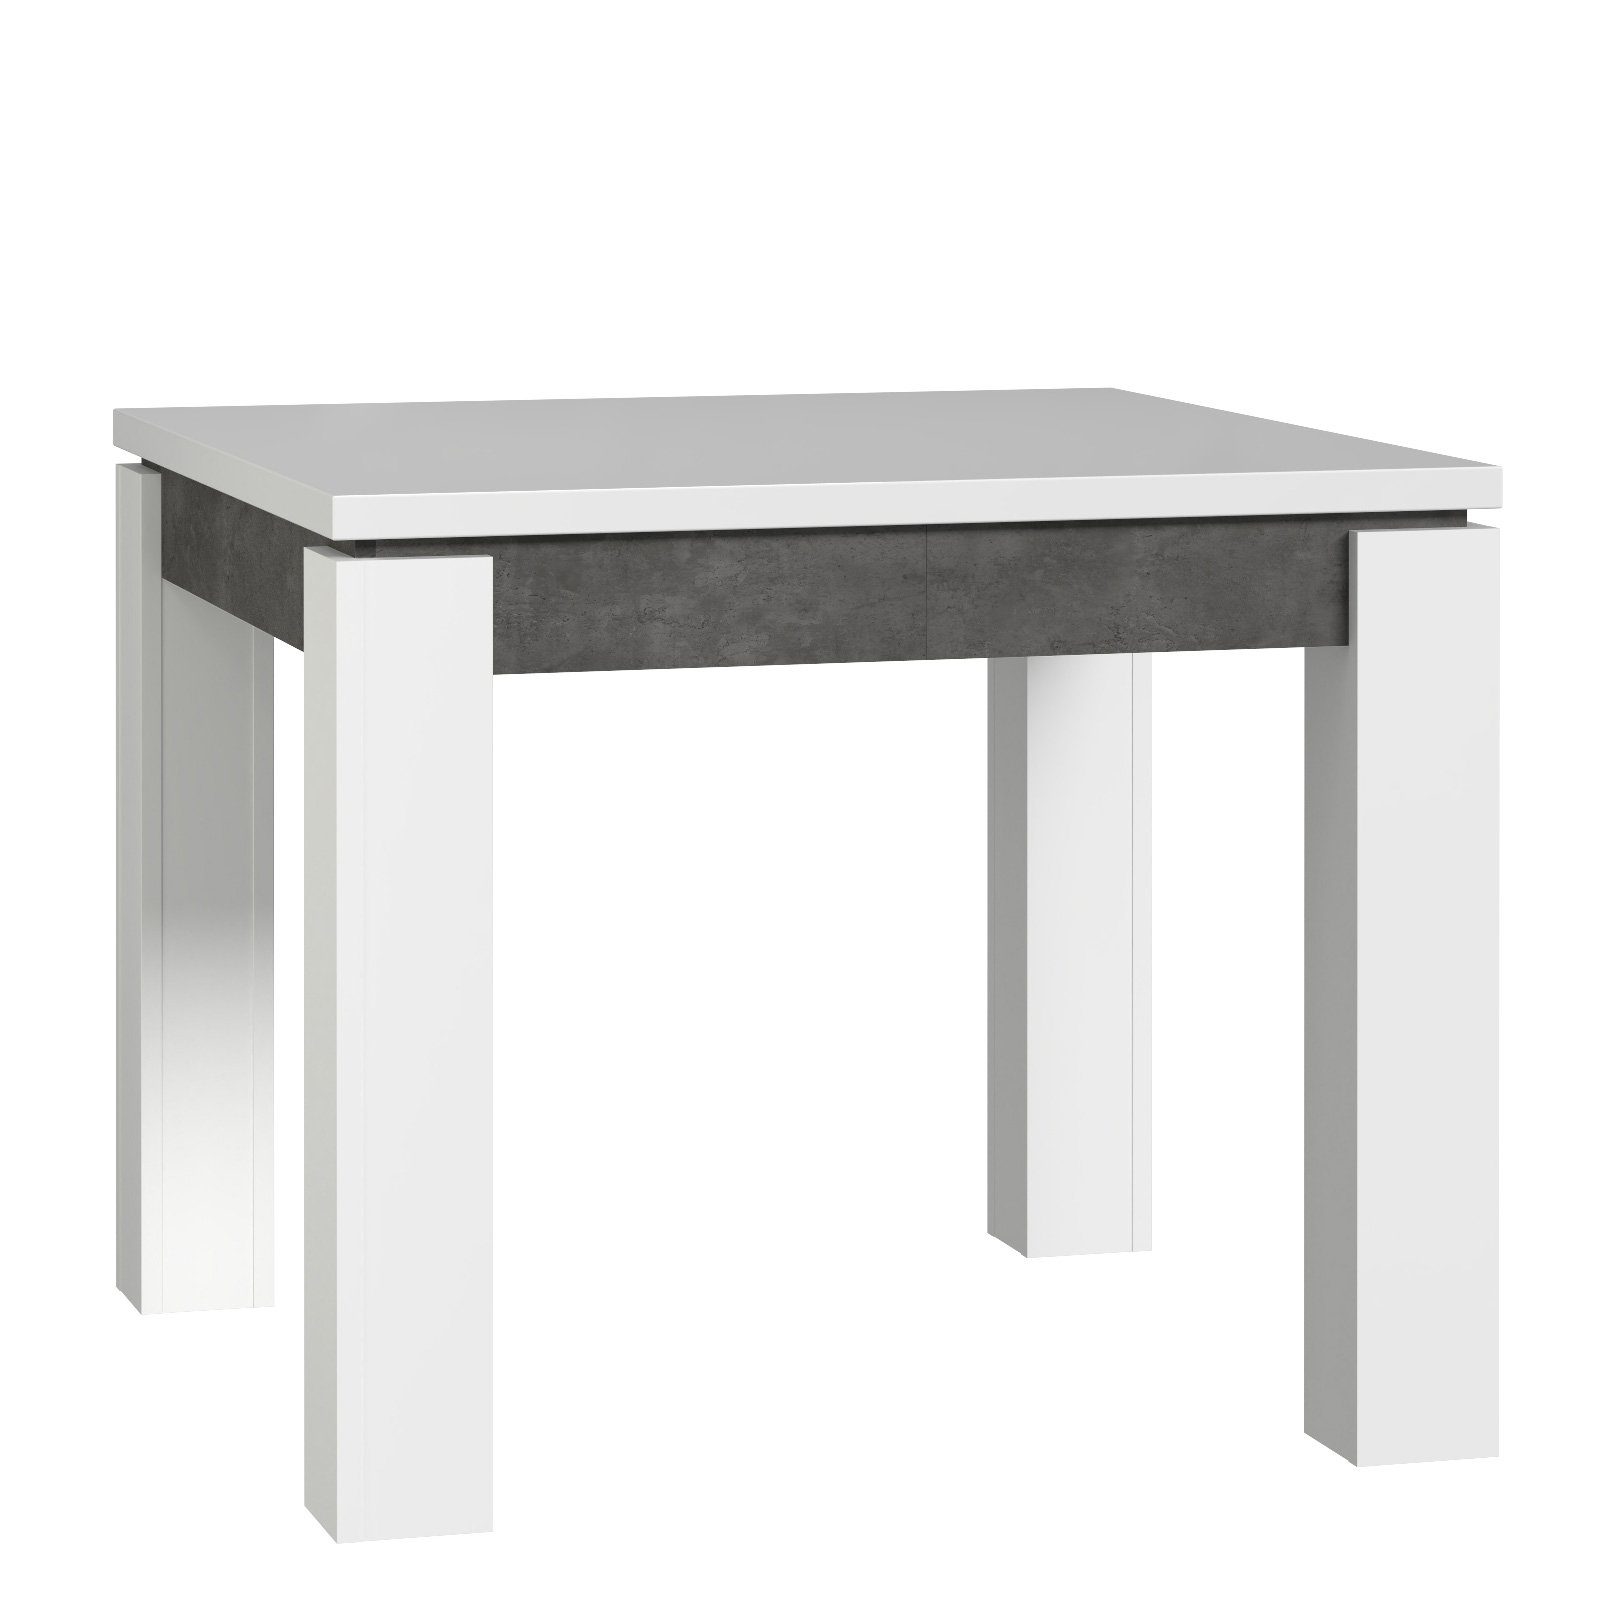 Newroom Esstisch Zanto, Esstisch Weiß Modern Ausziehbar und Betonoptik Esszimmer Tisch